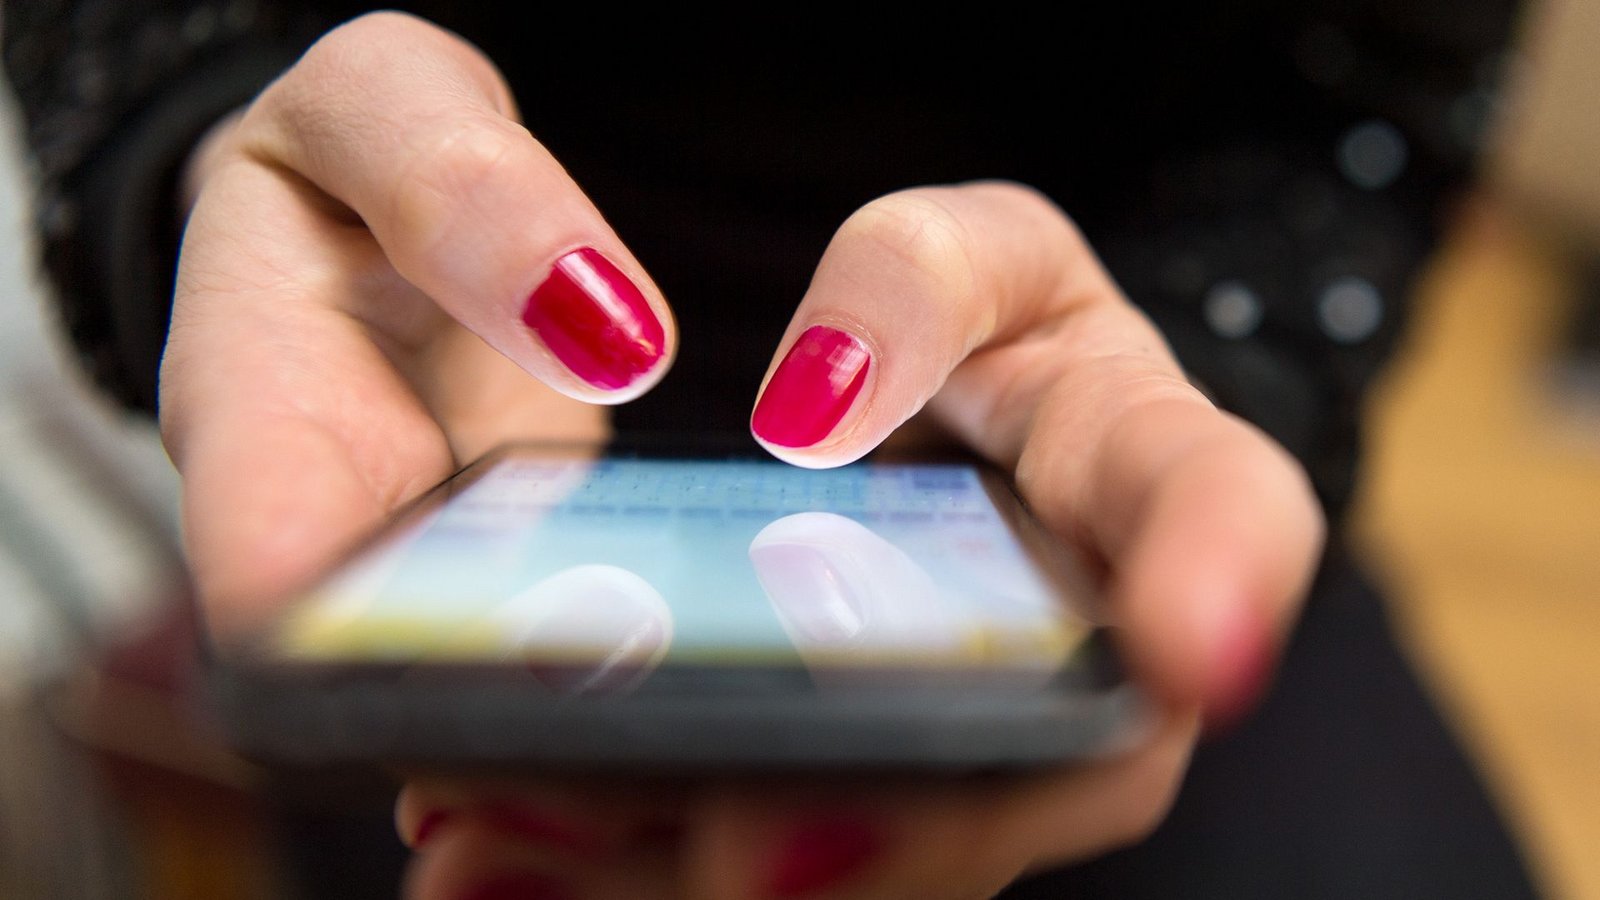 Am Smartphone verbringen Menschen in Deutschland einer Untersuchung zufolge mehrere Stunden am Tag.Foto: Sebastian Gollnow/dpa